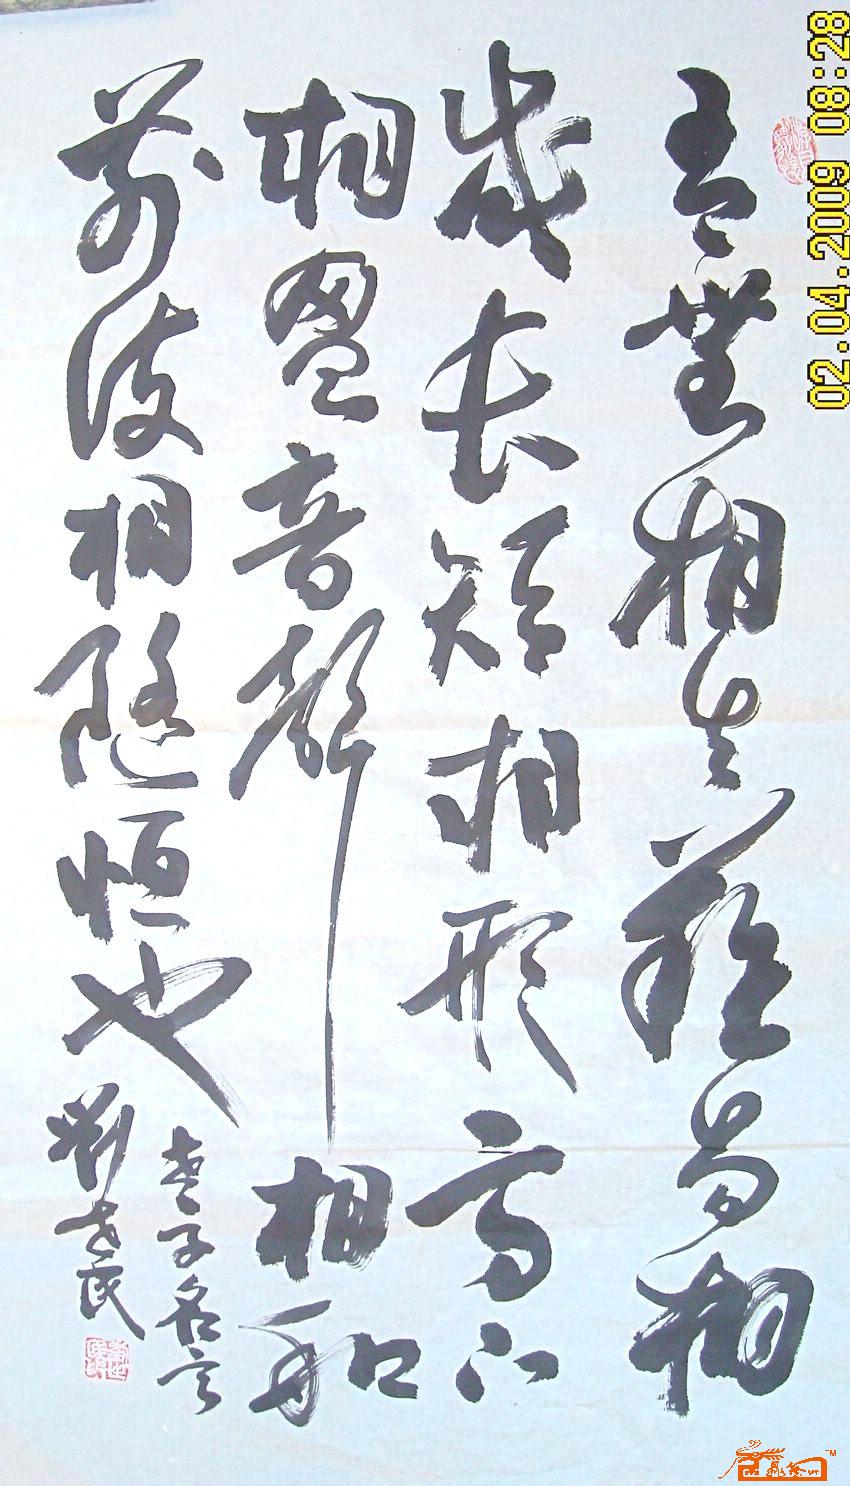 刘世民-老子名句-淘宝-名人字画-中国书画交易